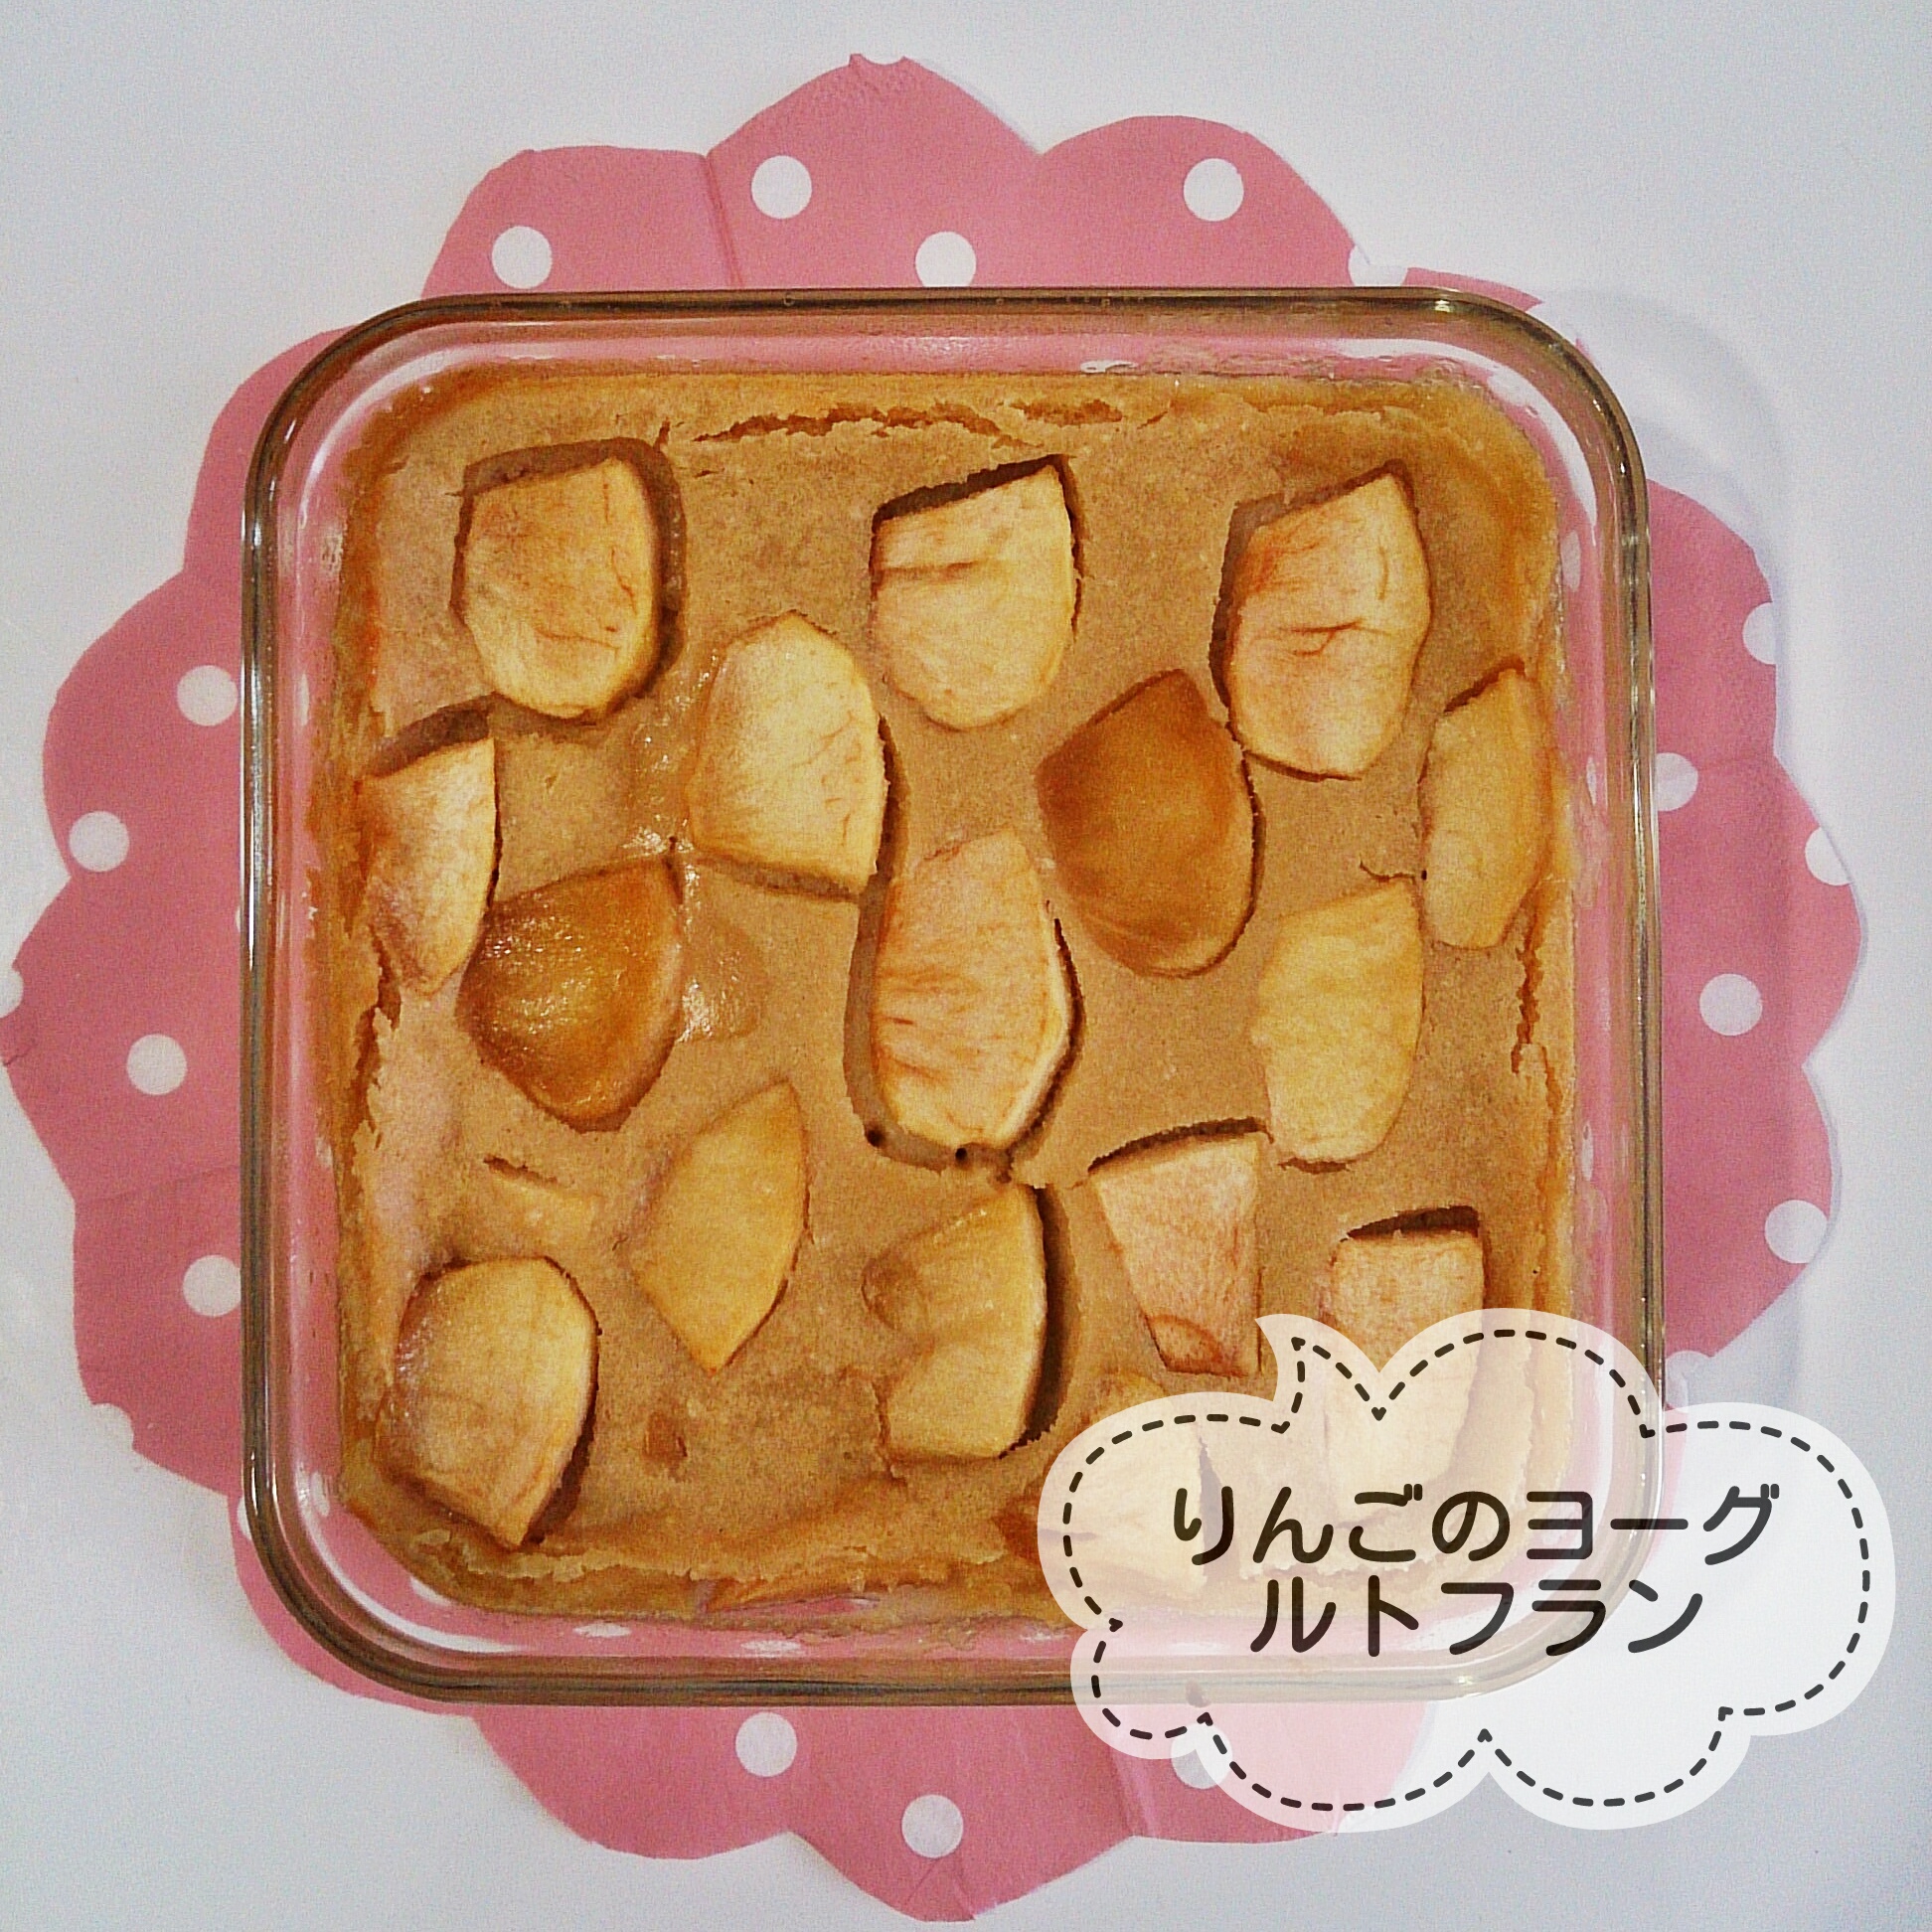 レシピレポ]白崎裕子さんの『かんたんデザート』より「りんごのヨーグルトフラン」作ってみました | おうちですごそう